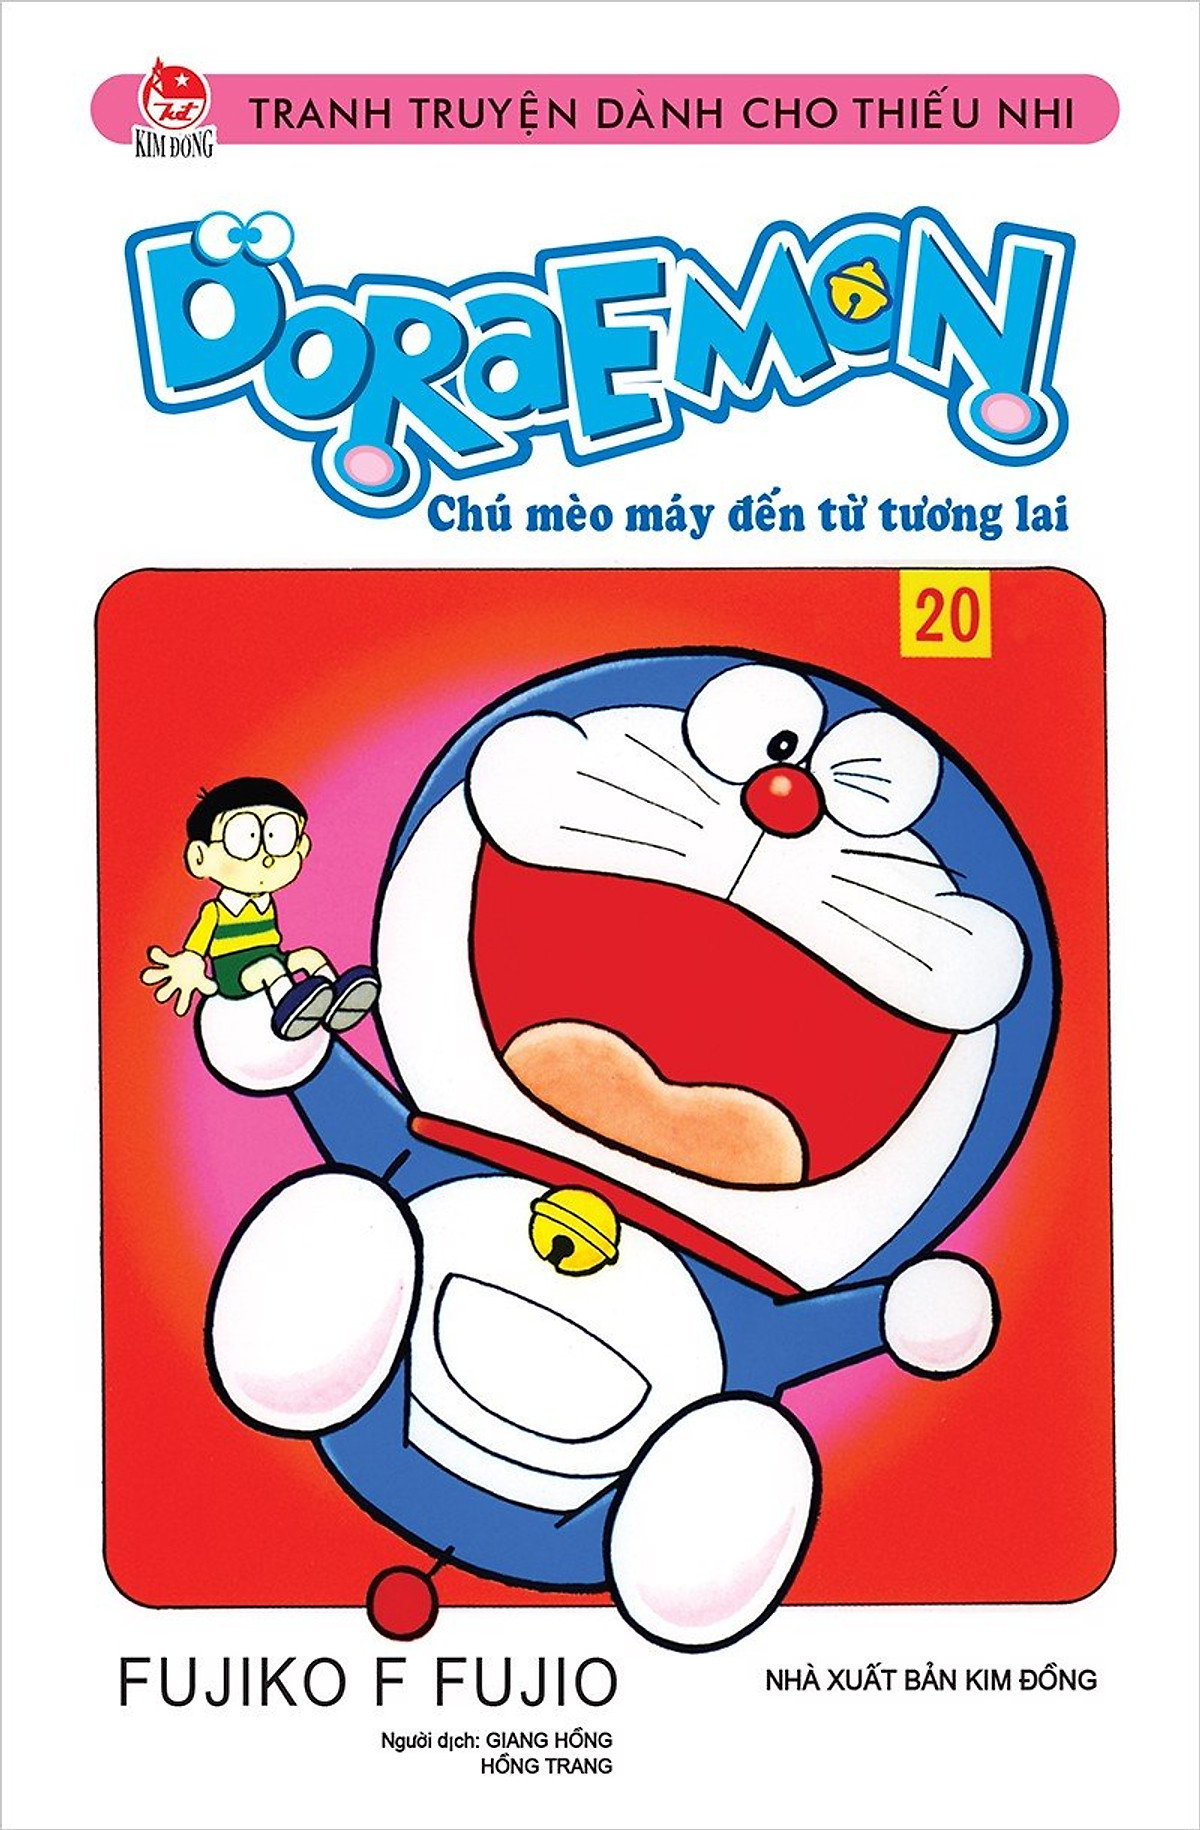 Tìm hiểu những cuốn sách truyện Doraemon lý thú nhất. Điểm qua những câu chuyện đầy hài hước và bổ ích dành cho mọi lứa tuổi. Đó chắc chắn sẽ là một trải nghiệm thú vị cho bạn và gia đình.